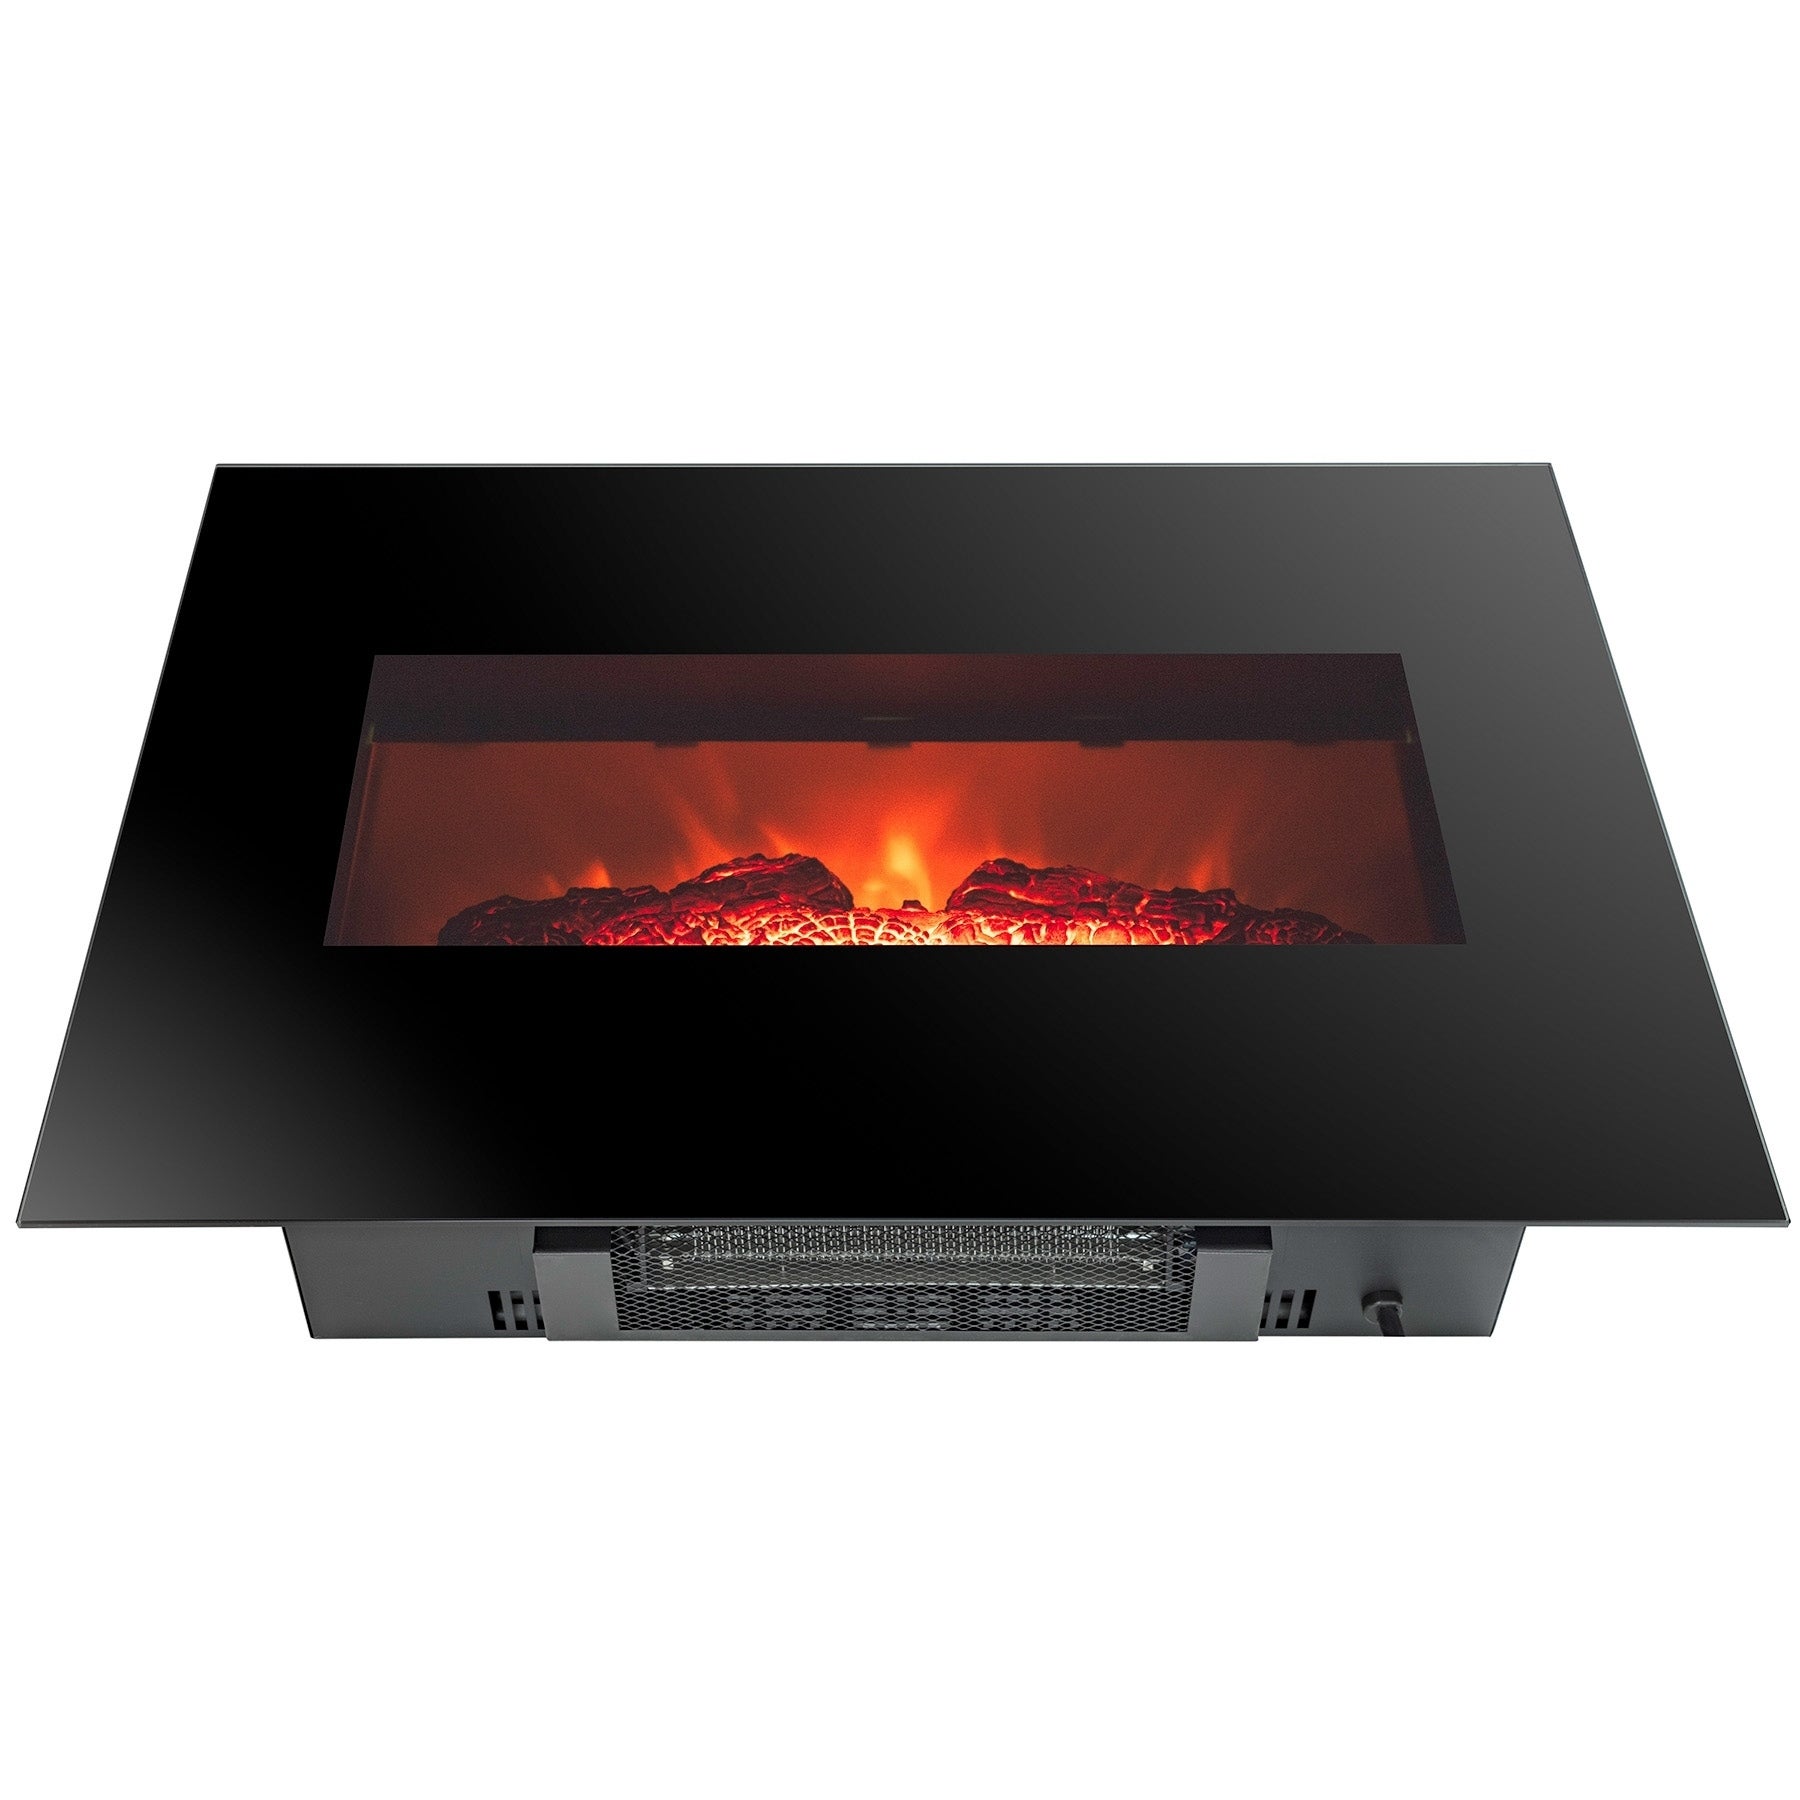 Golden Vantage FP0063 26 Wall Mount Electric Fireplace 3D Flames Firebox w Logs Heater ffe 630c 4ccf a434 007e9b74a446